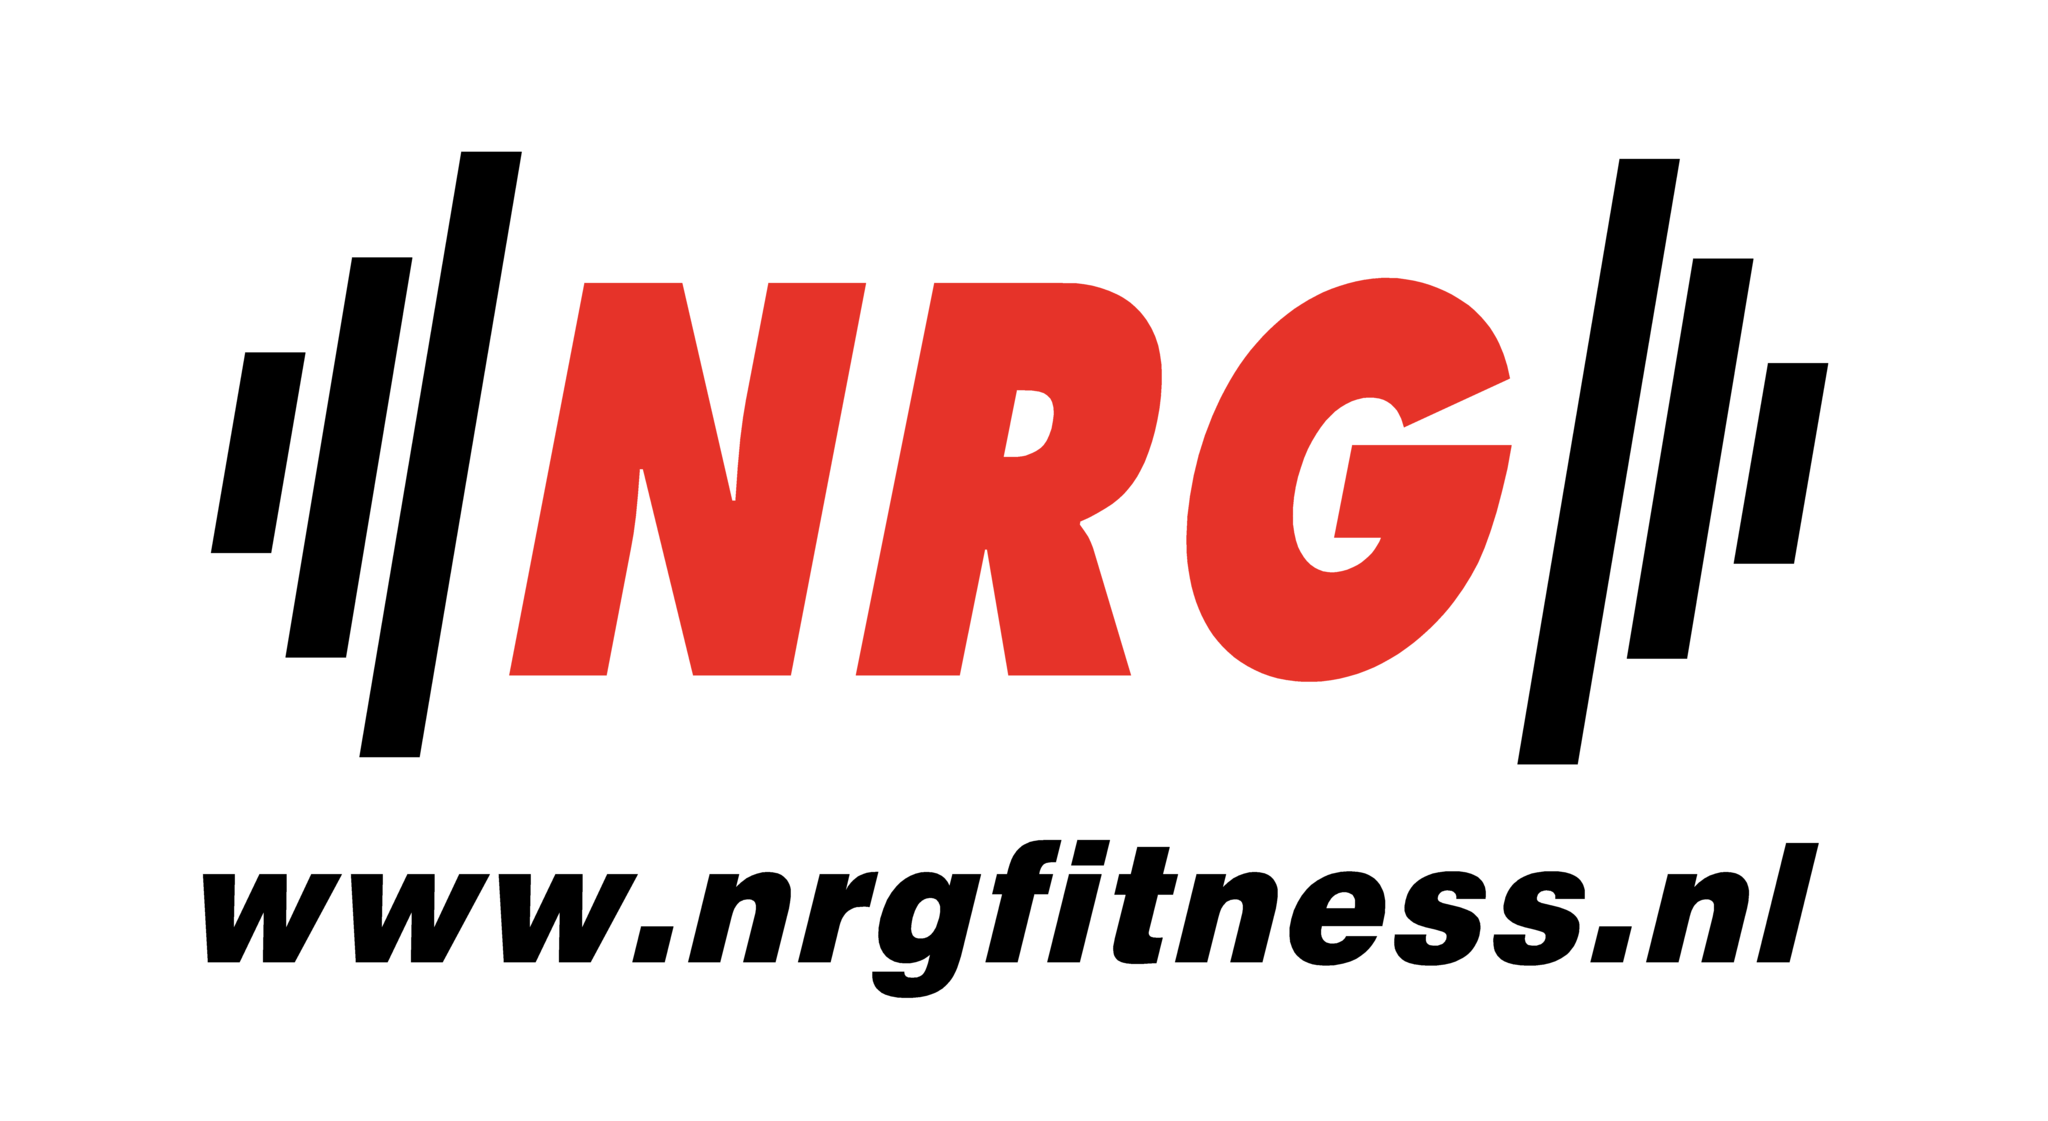 NRG fitness